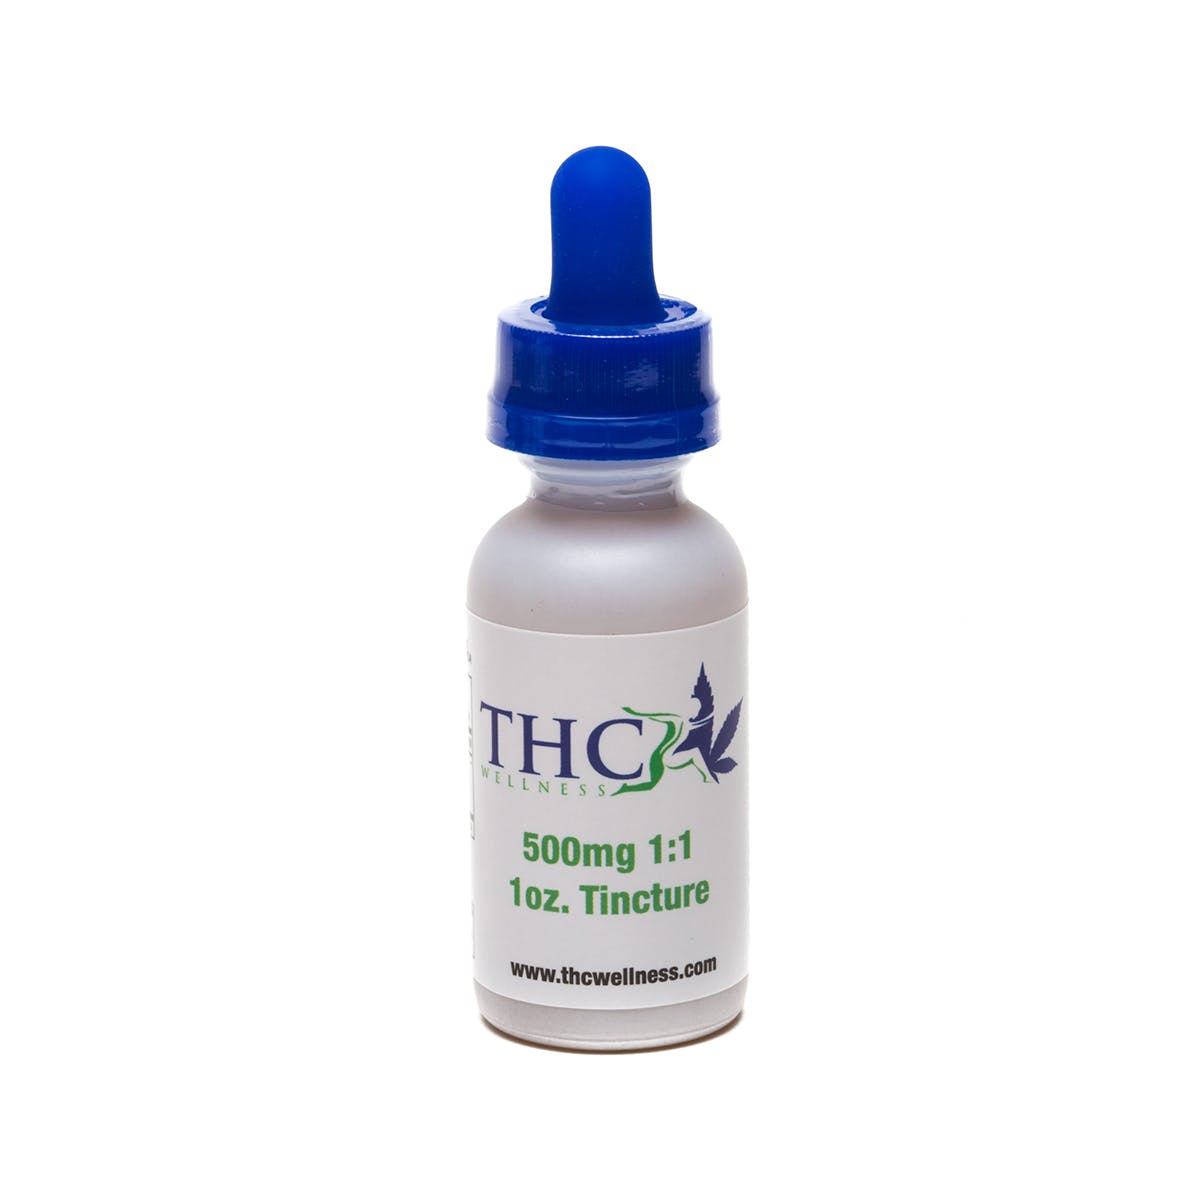 THC Wellness THC:CBD 1:1 Tincture 500mg